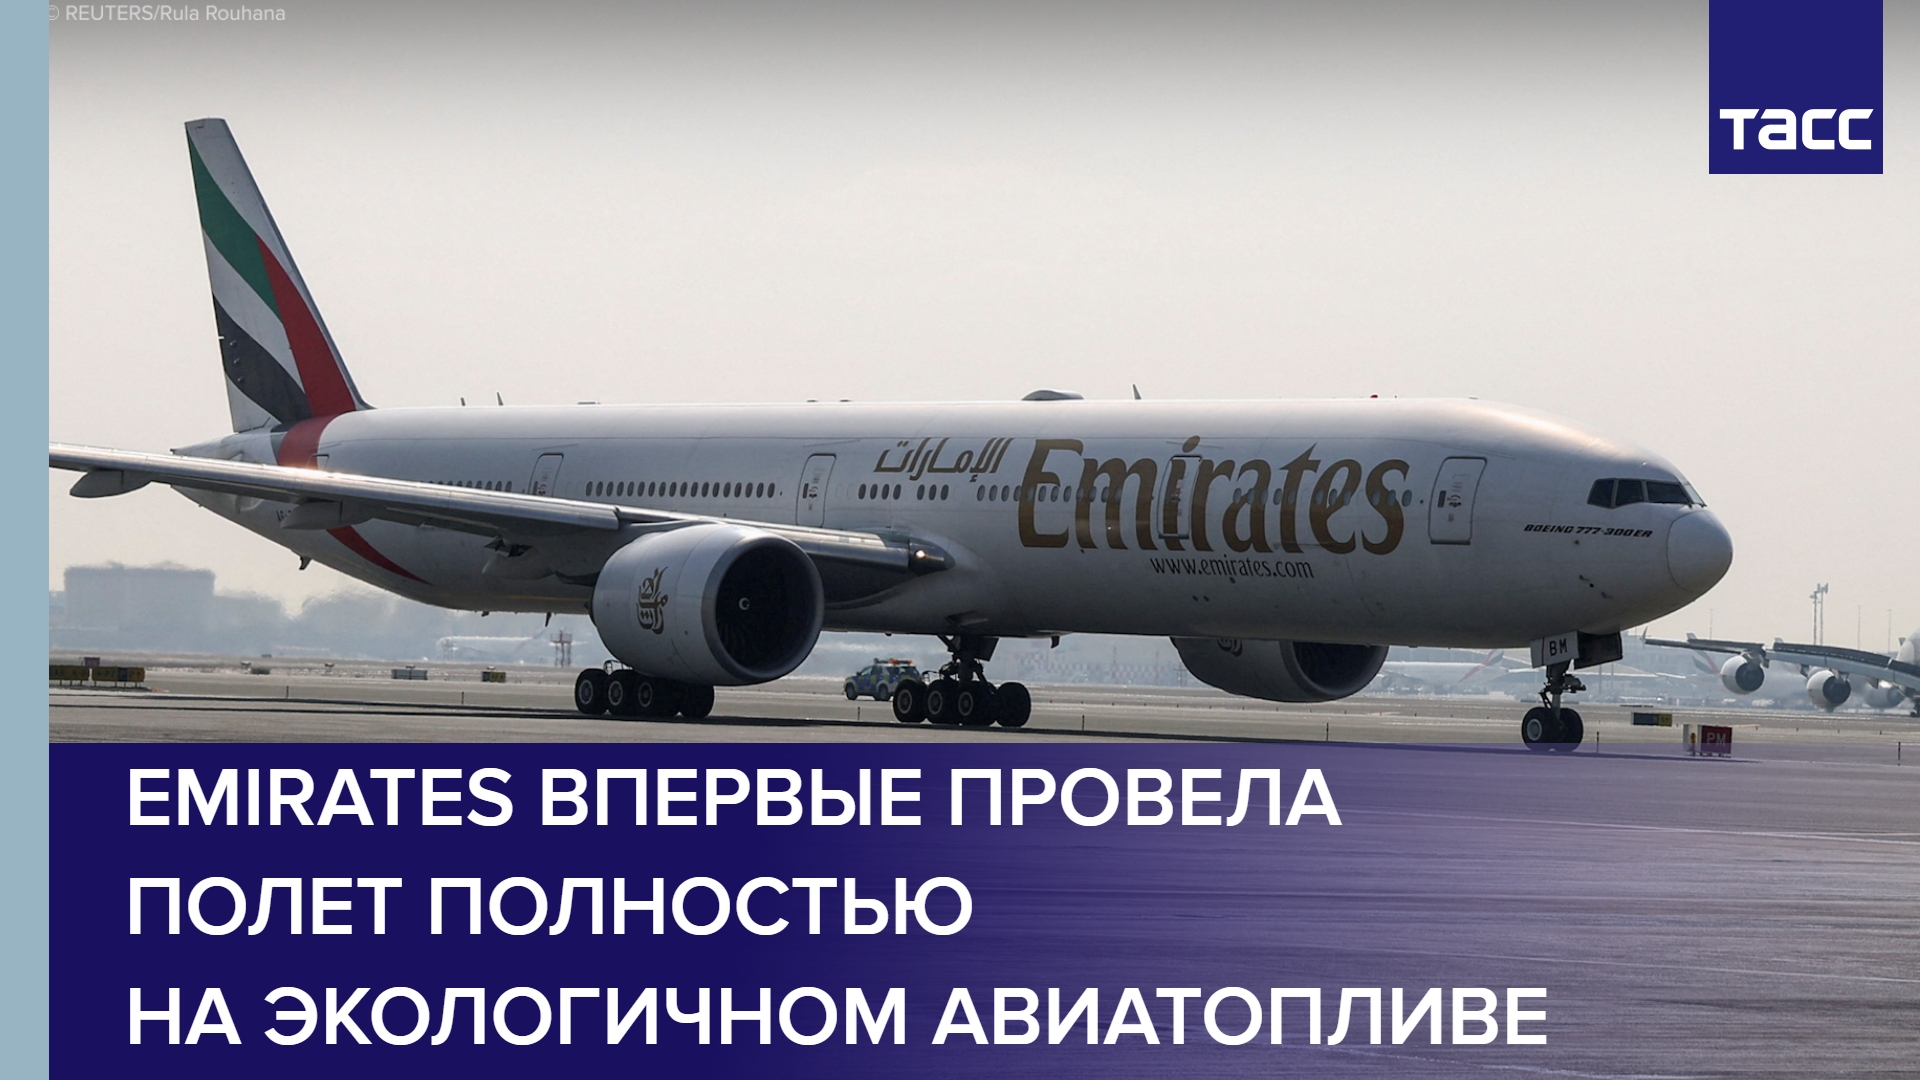 Emirates впервые провела полет полностью на экологичном авиатопливе